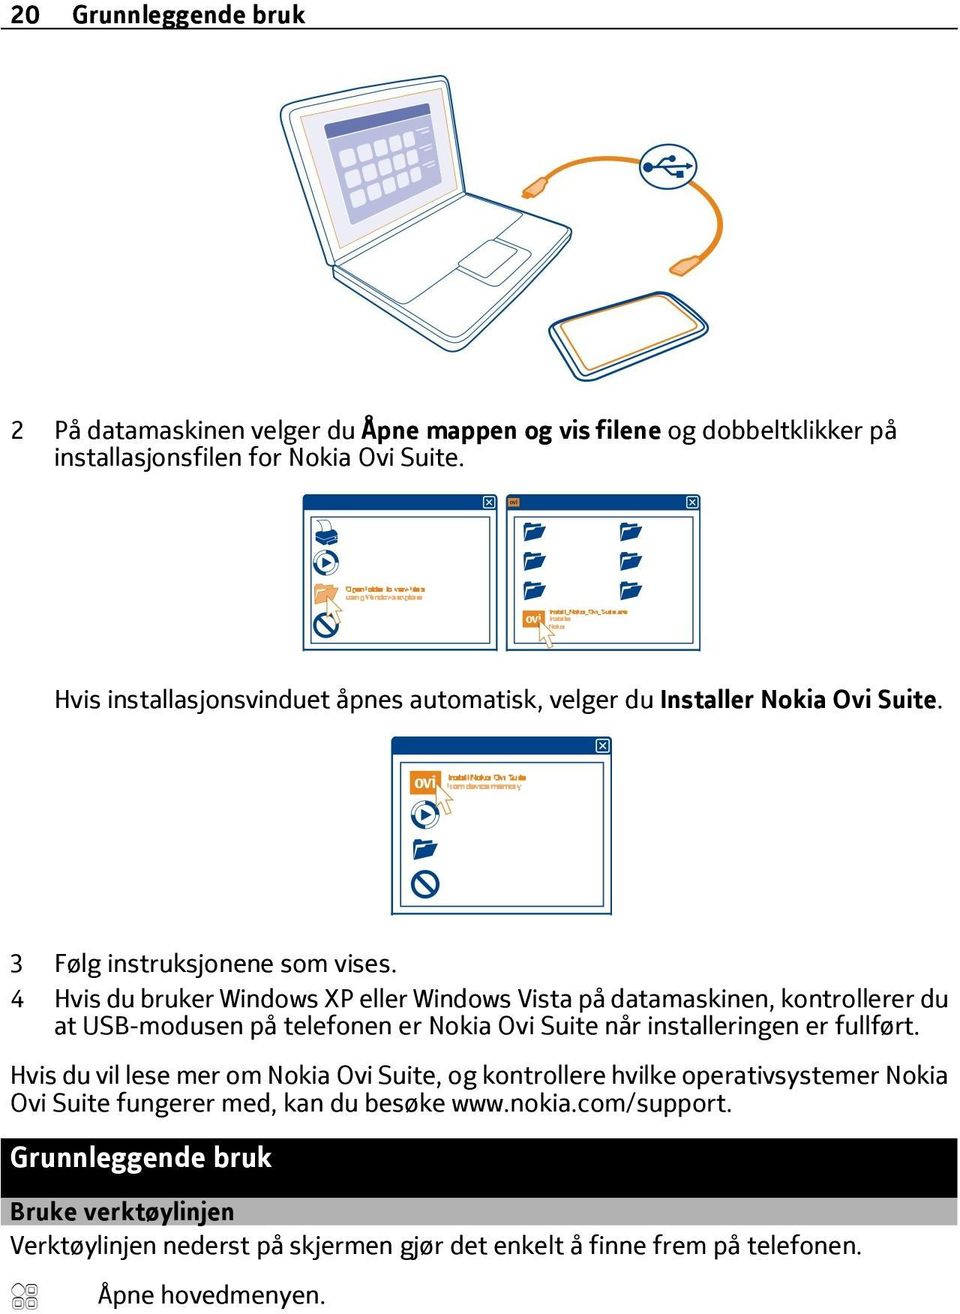 4 Hvis du bruker Windows XP eller Windows Vista på datamaskinen, kontrollerer du at USB-modusen på telefonen er Nokia Ovi Suite når installeringen er fullført.